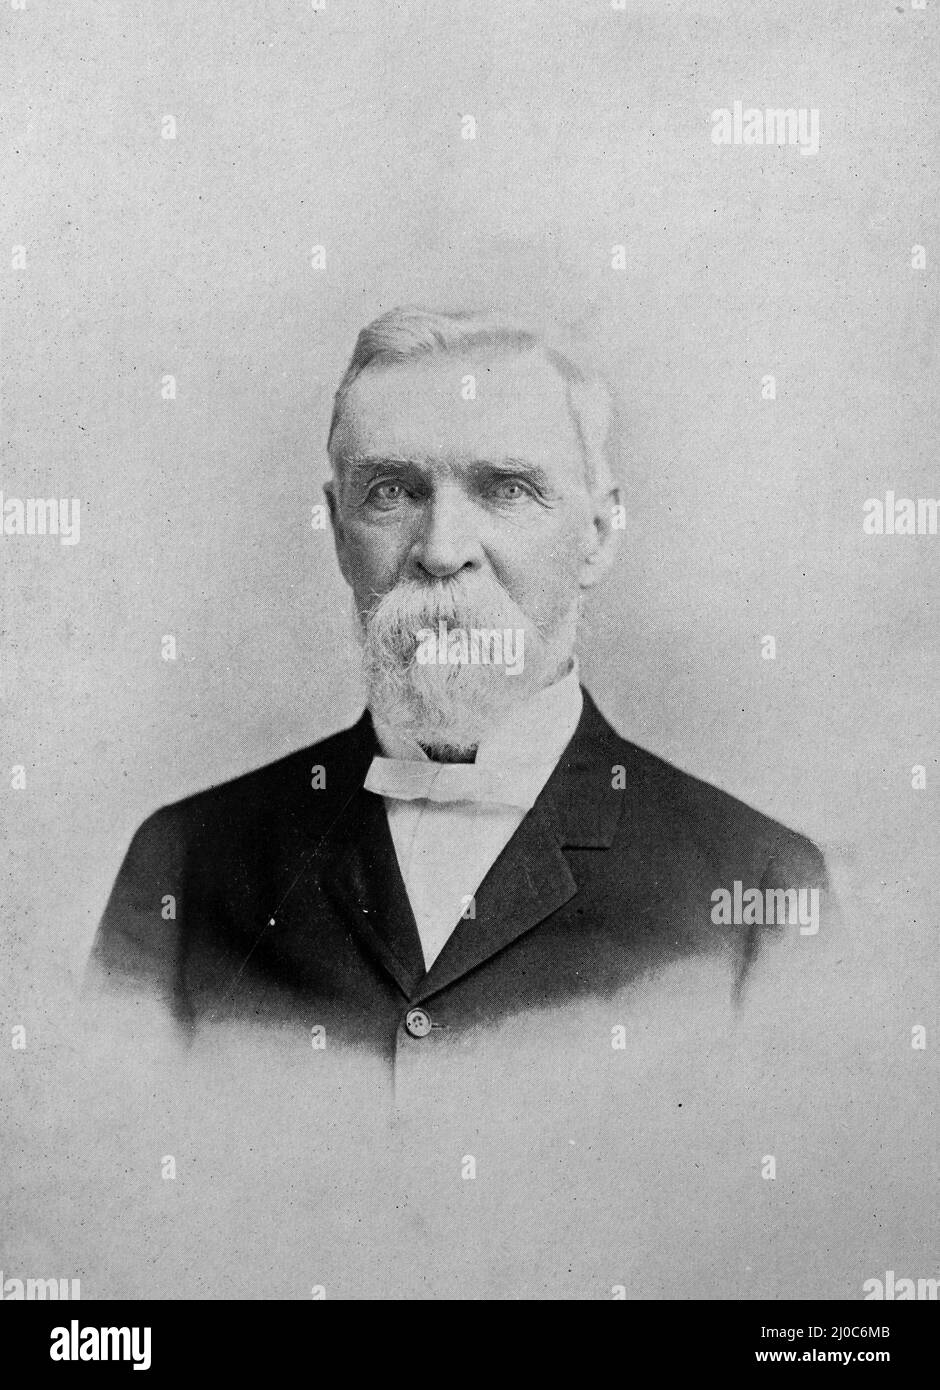 John Fritz, amerikanischer Pionier der Eisen- und Stahltechnologie und Vater der US-Stahlindustrie; Schwarz-Weiß-Fotografie, aufgenommen um 1890s Stockfoto